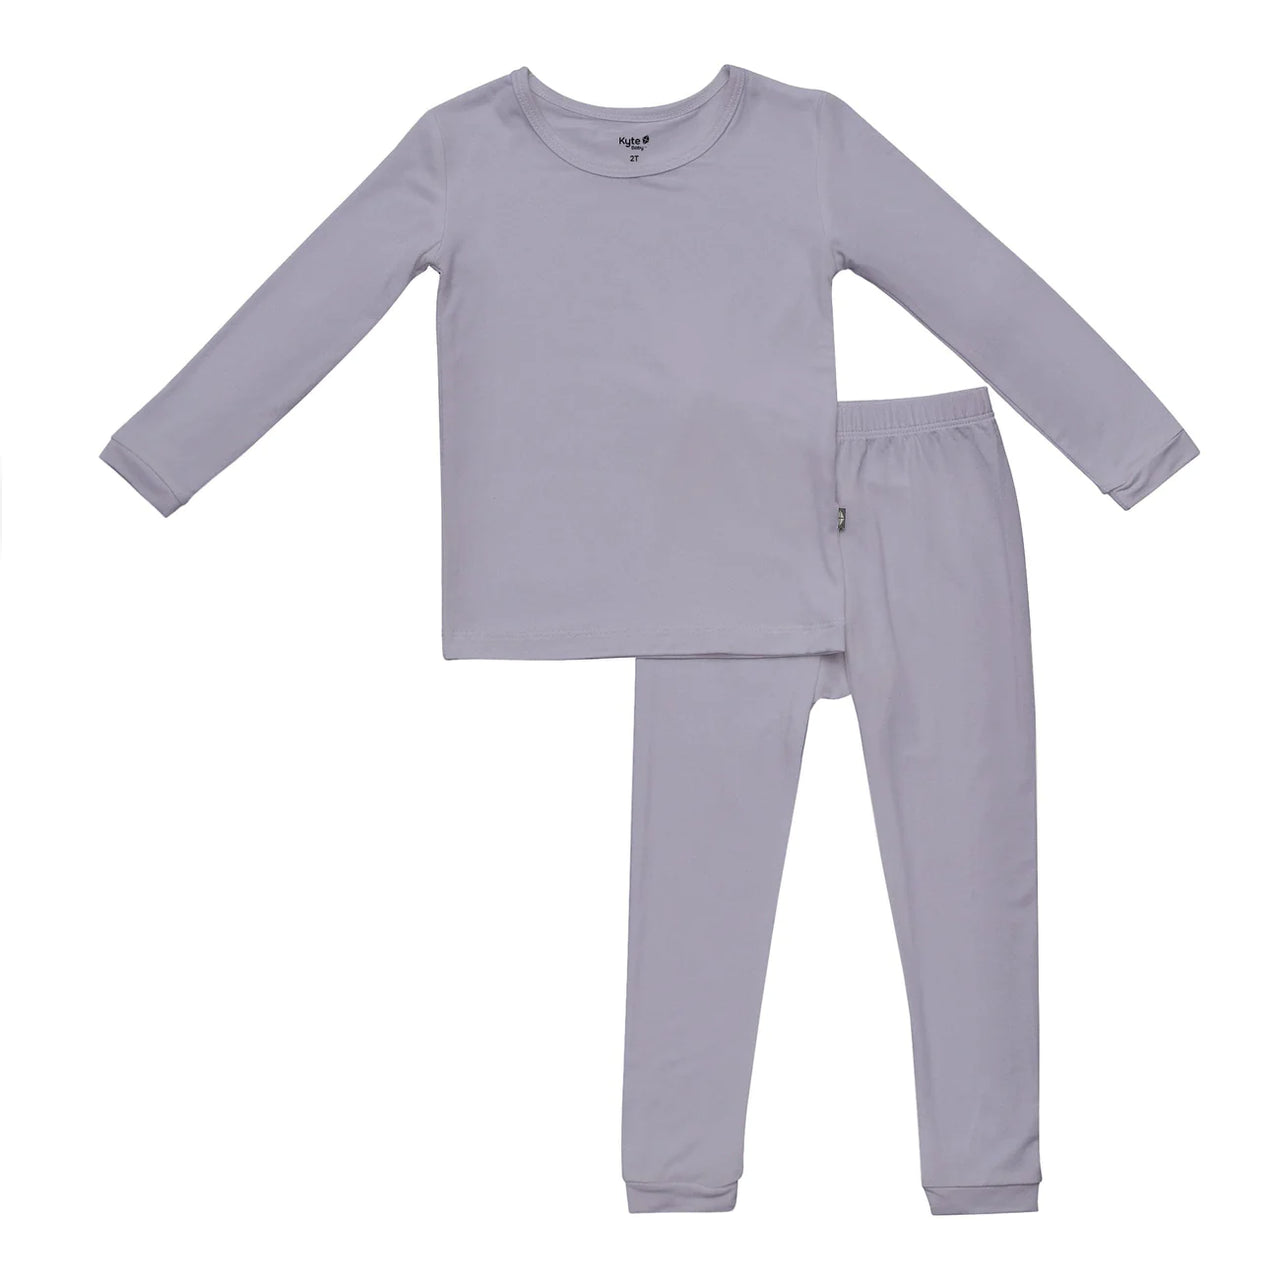 Toddler Pajama Set- Haze